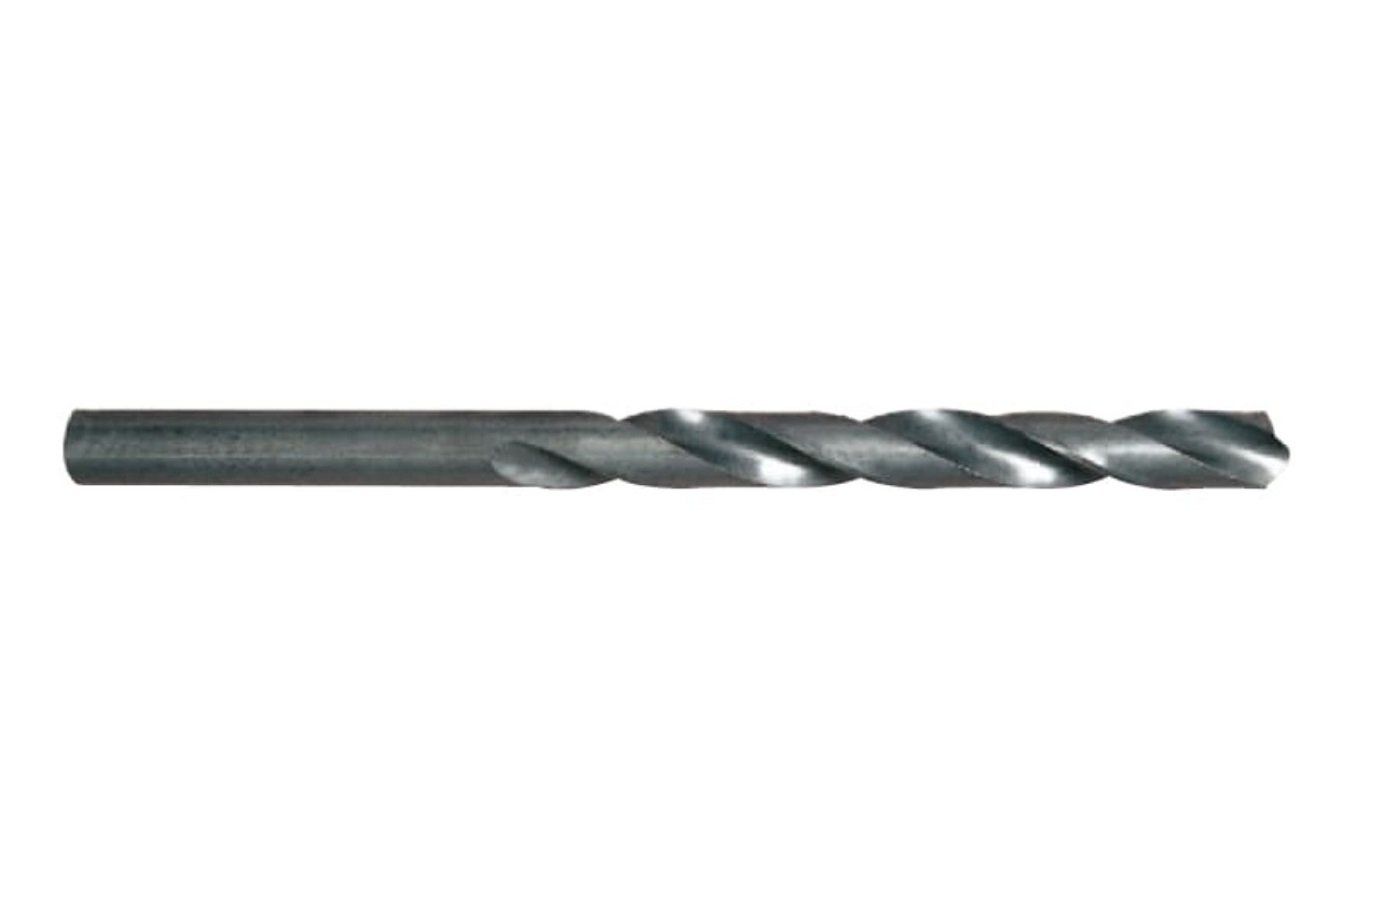 YG-1 HSS Metal Matkap Ucu 17.0 mm (D1105170)